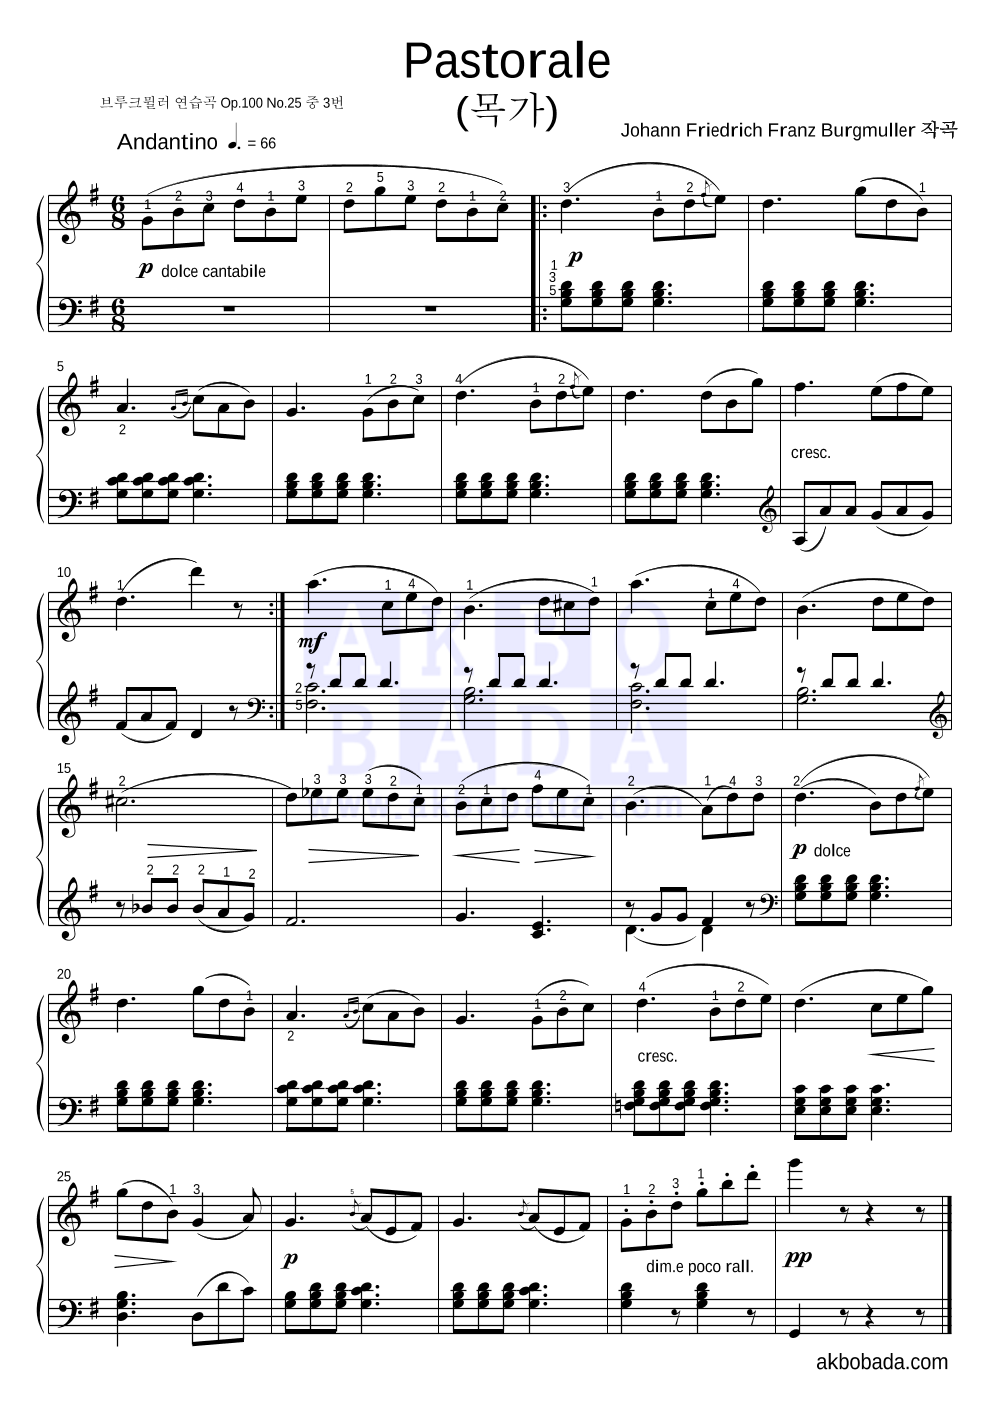 부르크뮐러 - Pastorale (목가) 피아노 2단 악보 